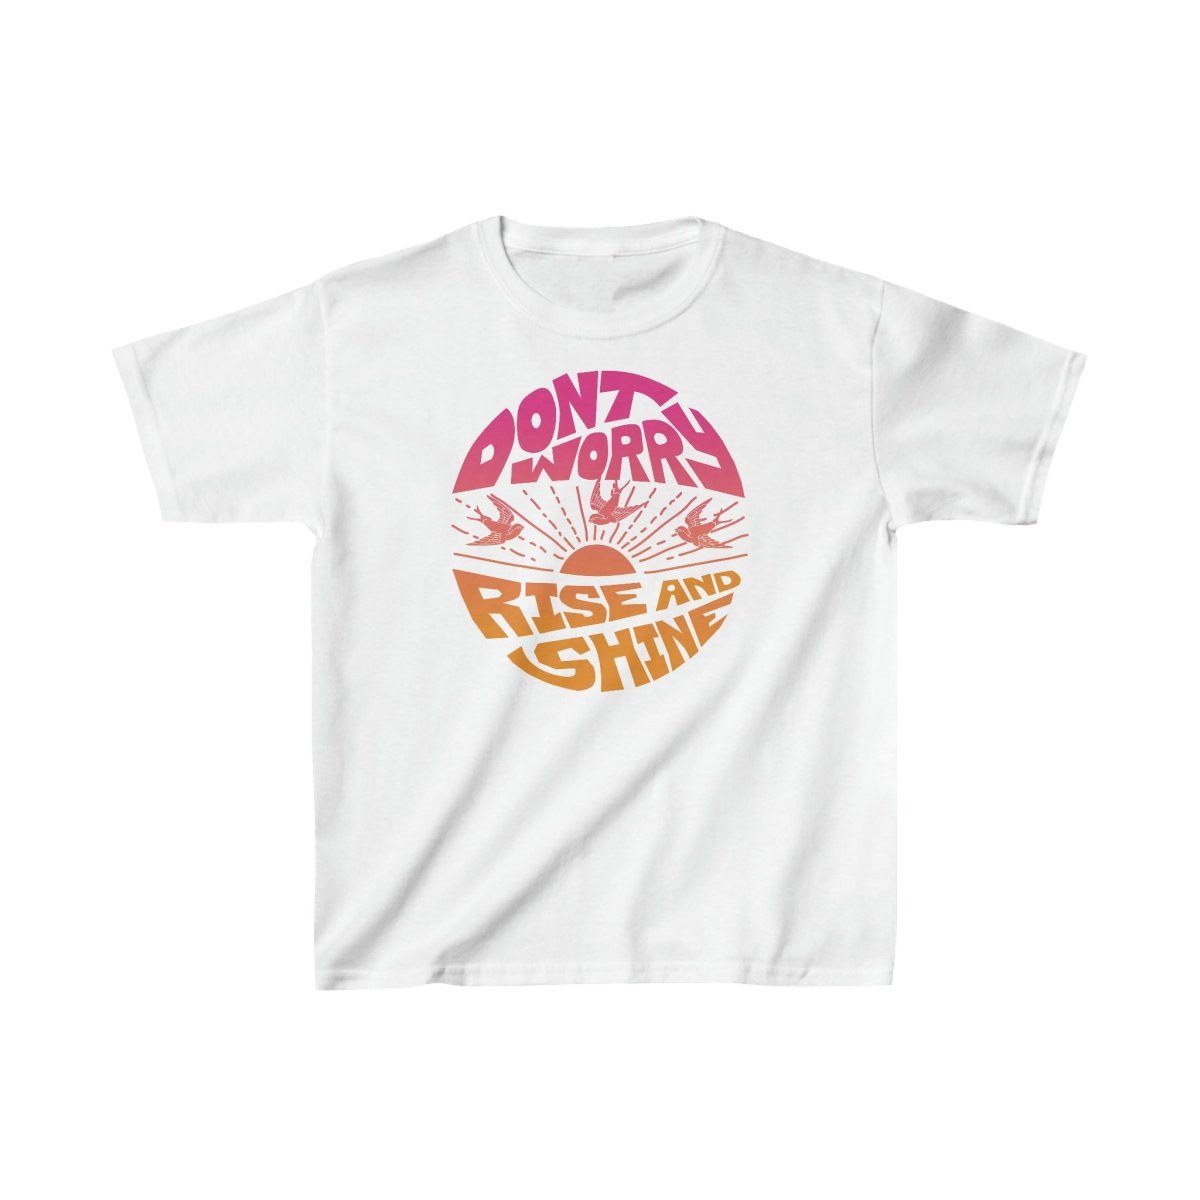 Don't Worry Kids T-Shirt, Zen, Peace, Love Gift